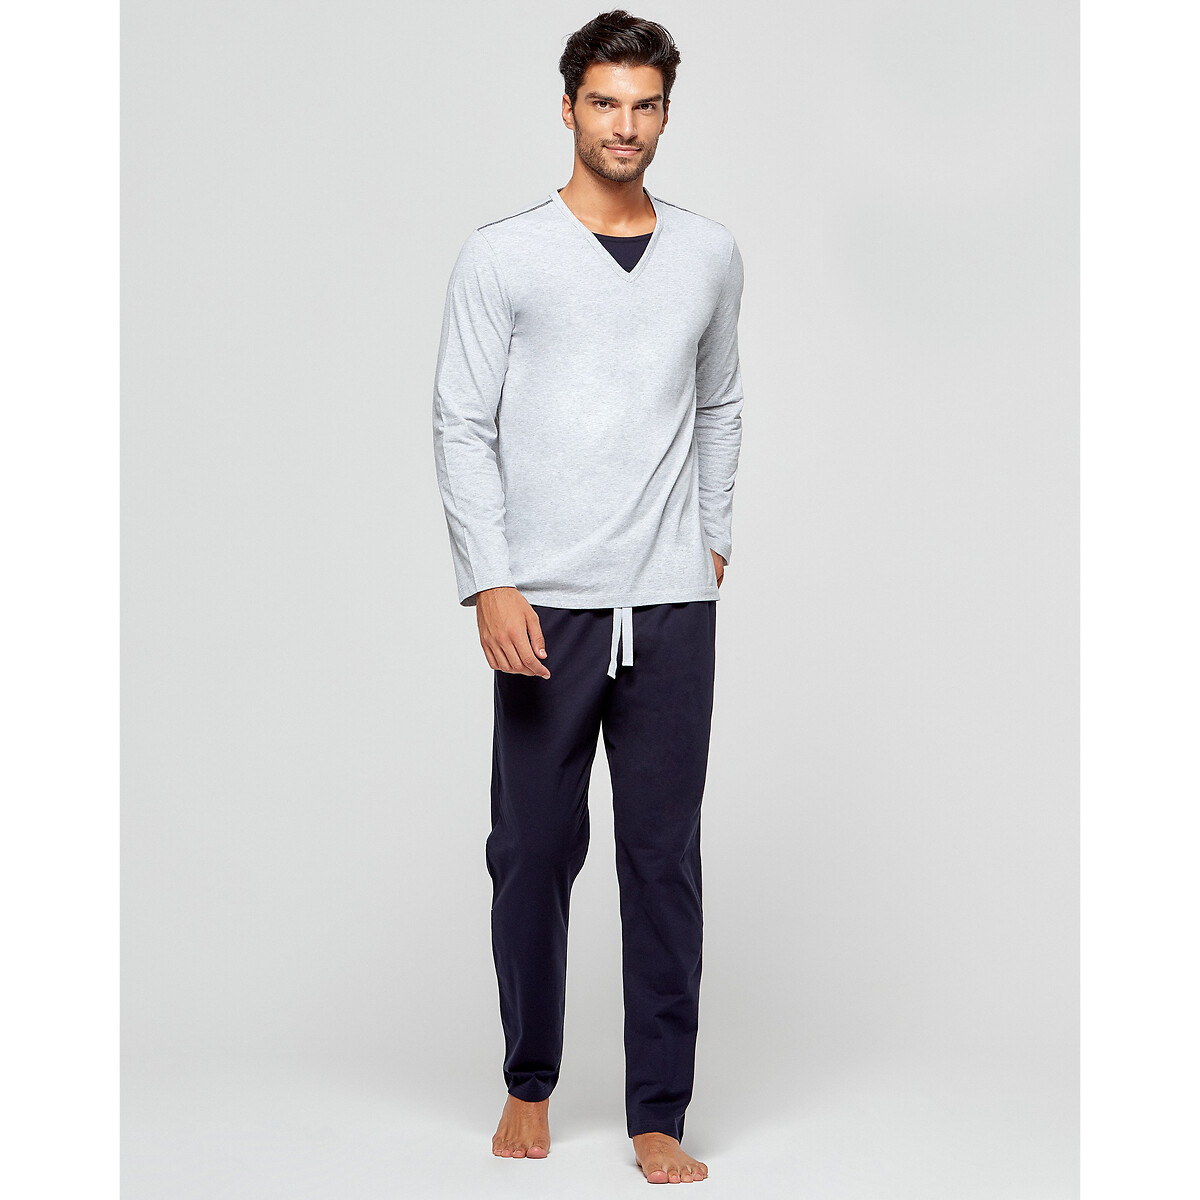 Pijama algodón orgánico gris/azul marino Impetus | La Redoute